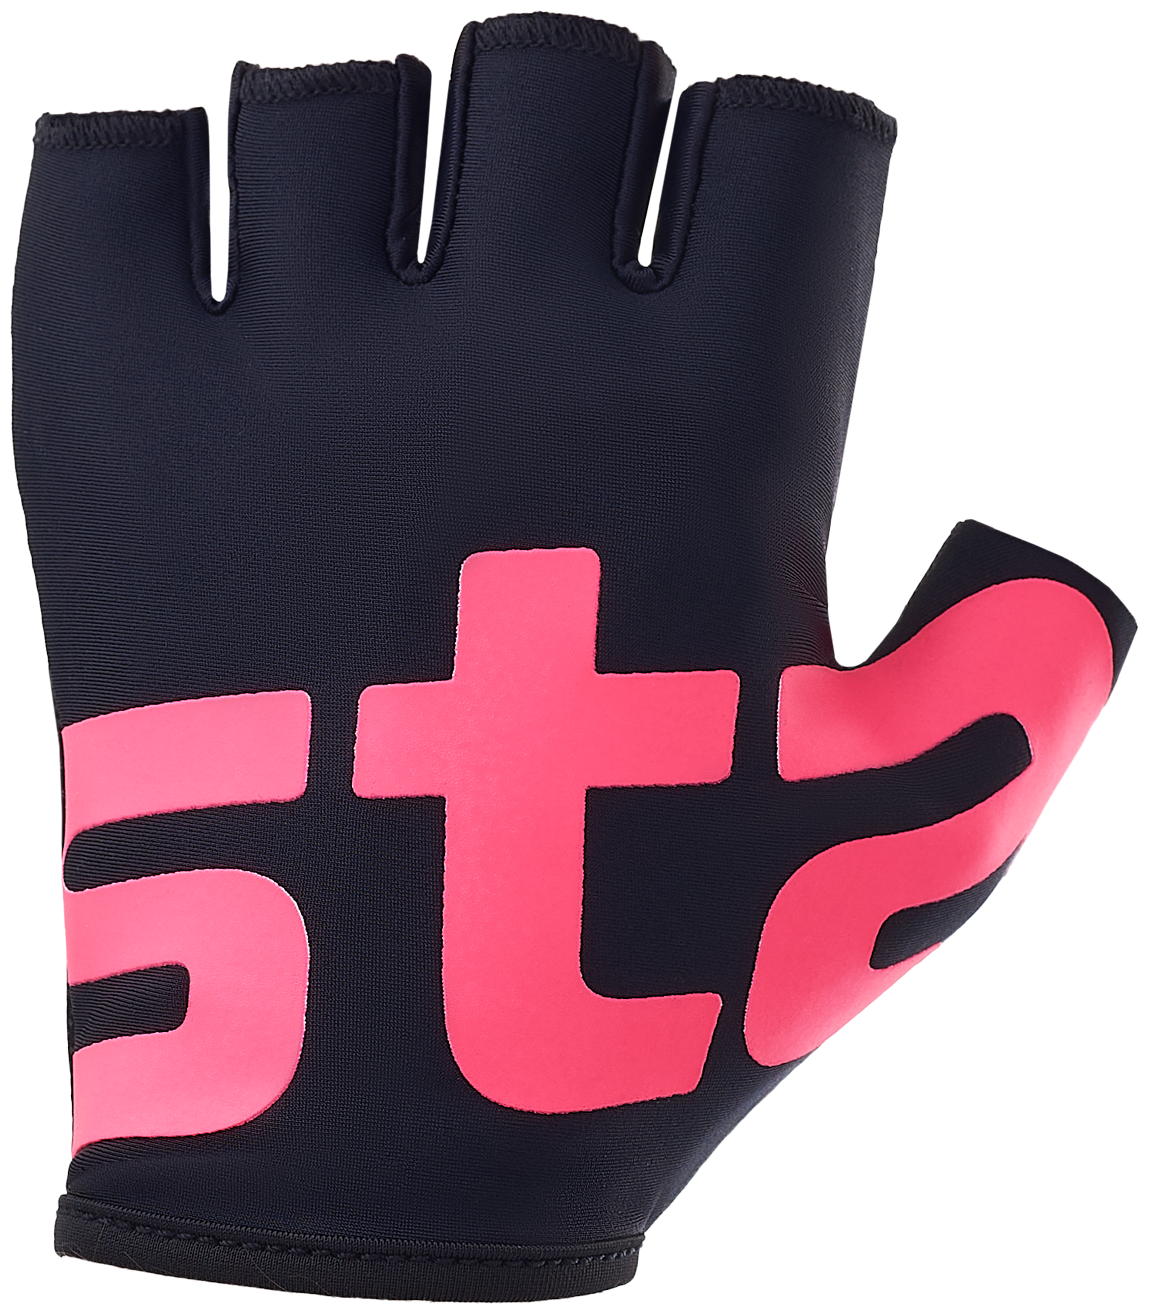 Перчатки для фитнеса Starfit WG-102, черный/малиновый, S